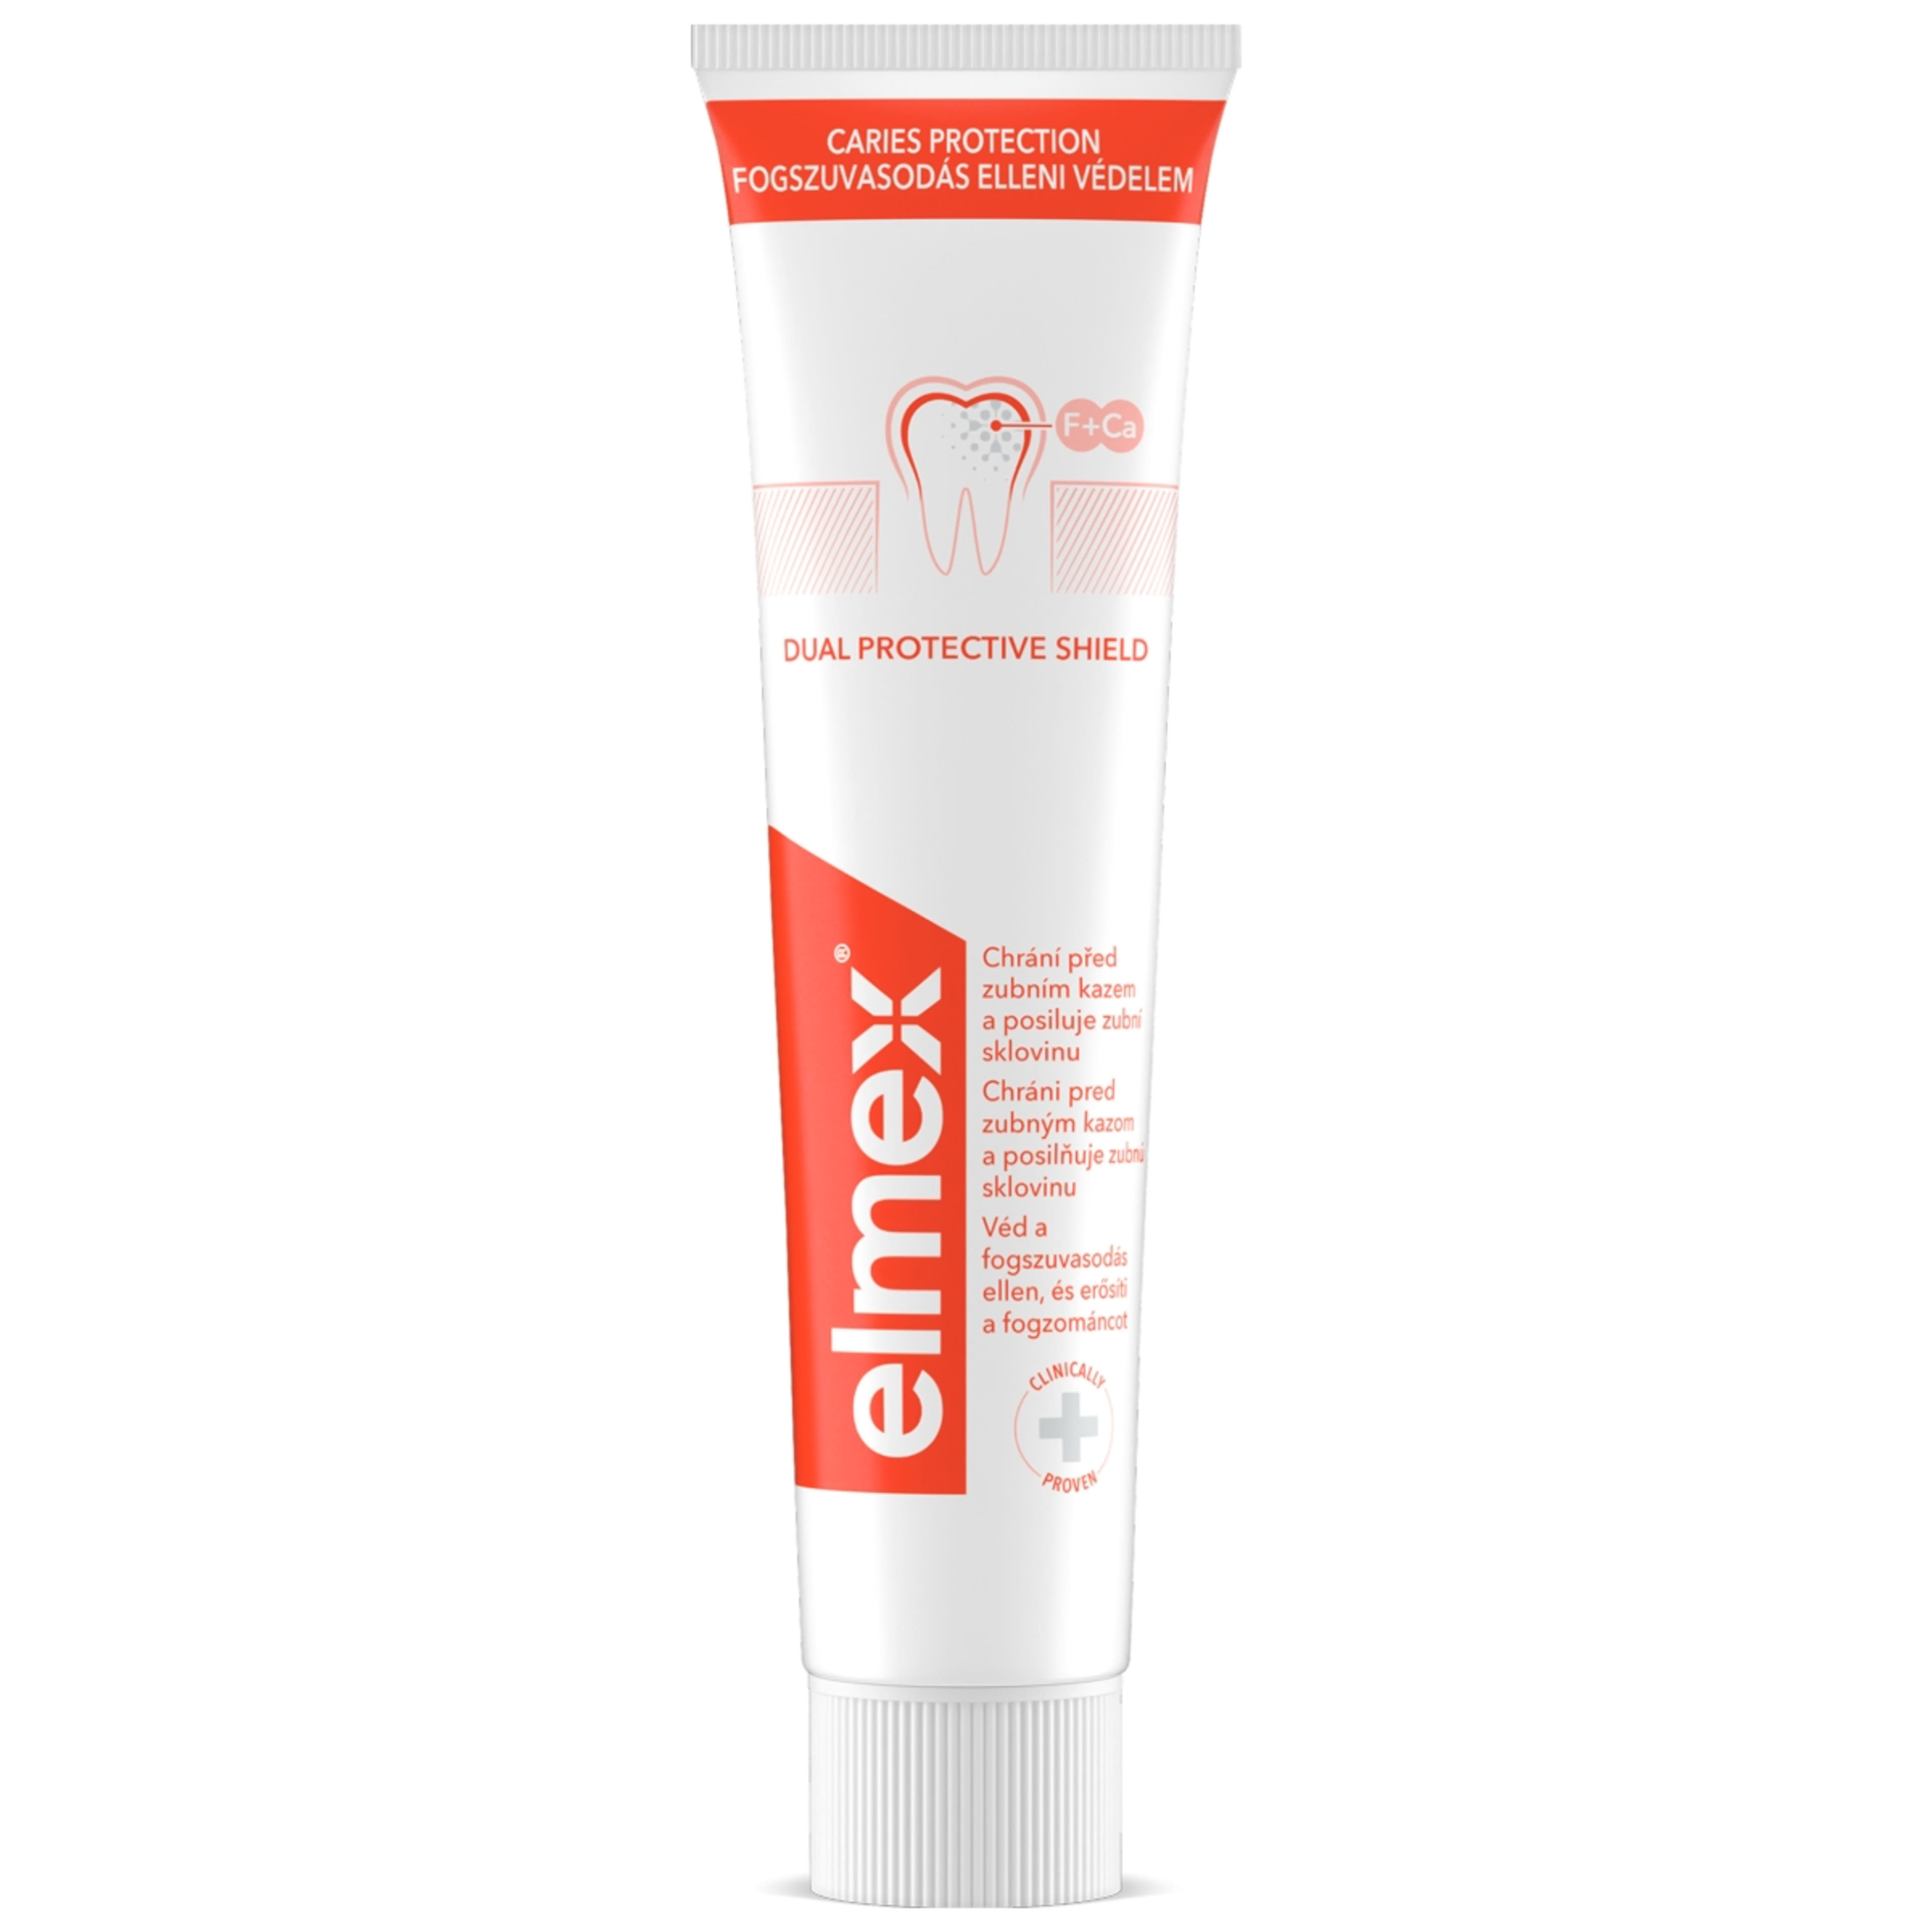 Elmex Caries Protection fogszuvasodás elleni fogkrém - 75 ml-2